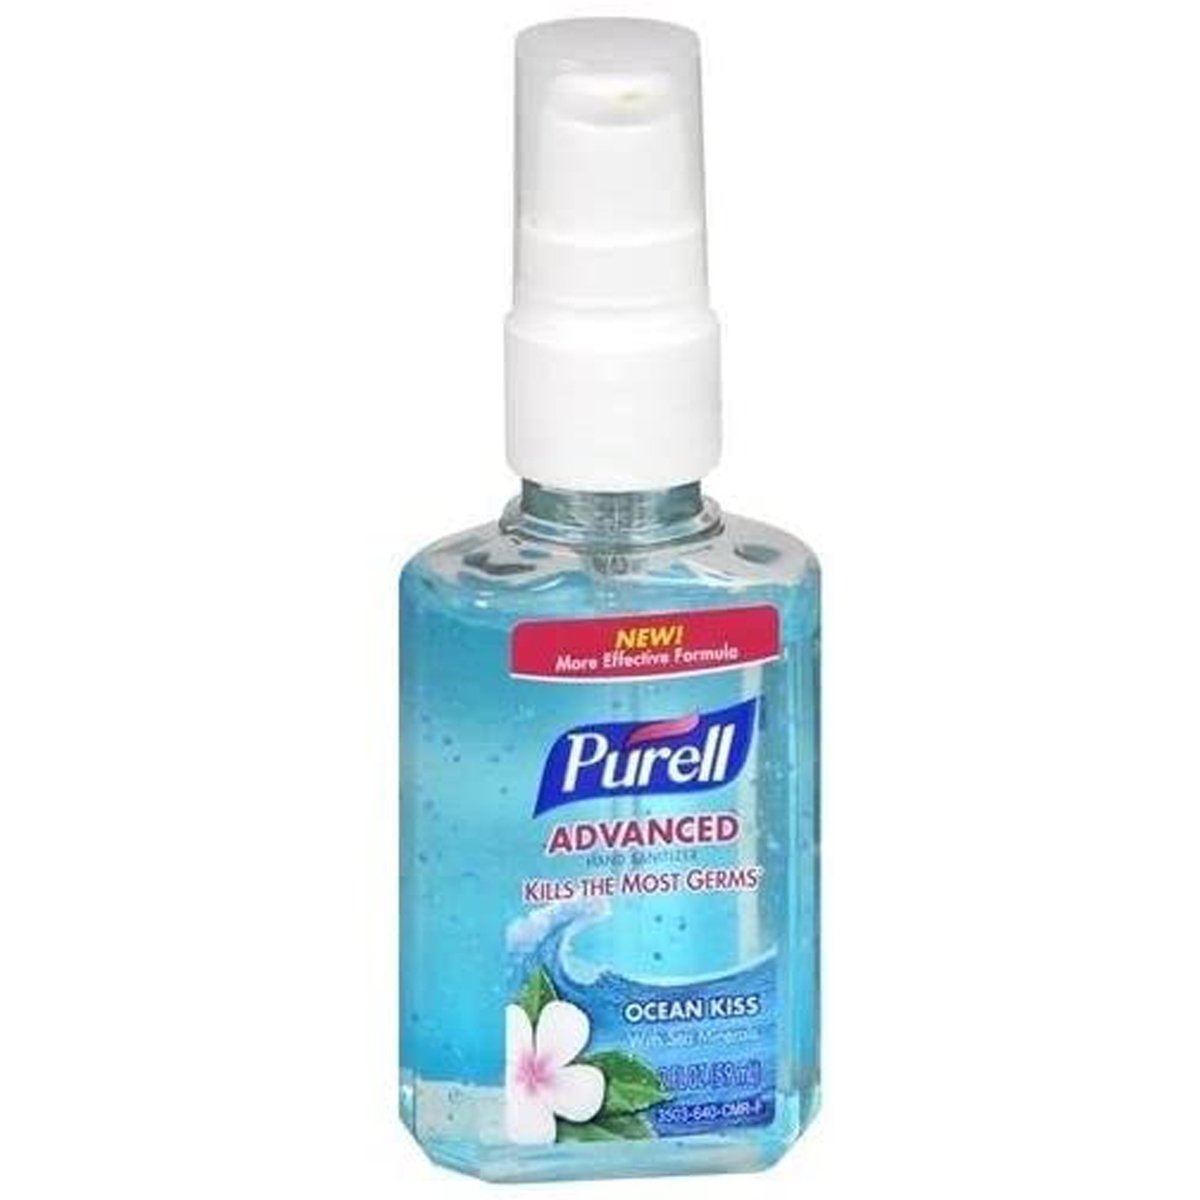 Purell Advanced Hand Sanitizer Ocean Kiss Pump Bottle 59 ml